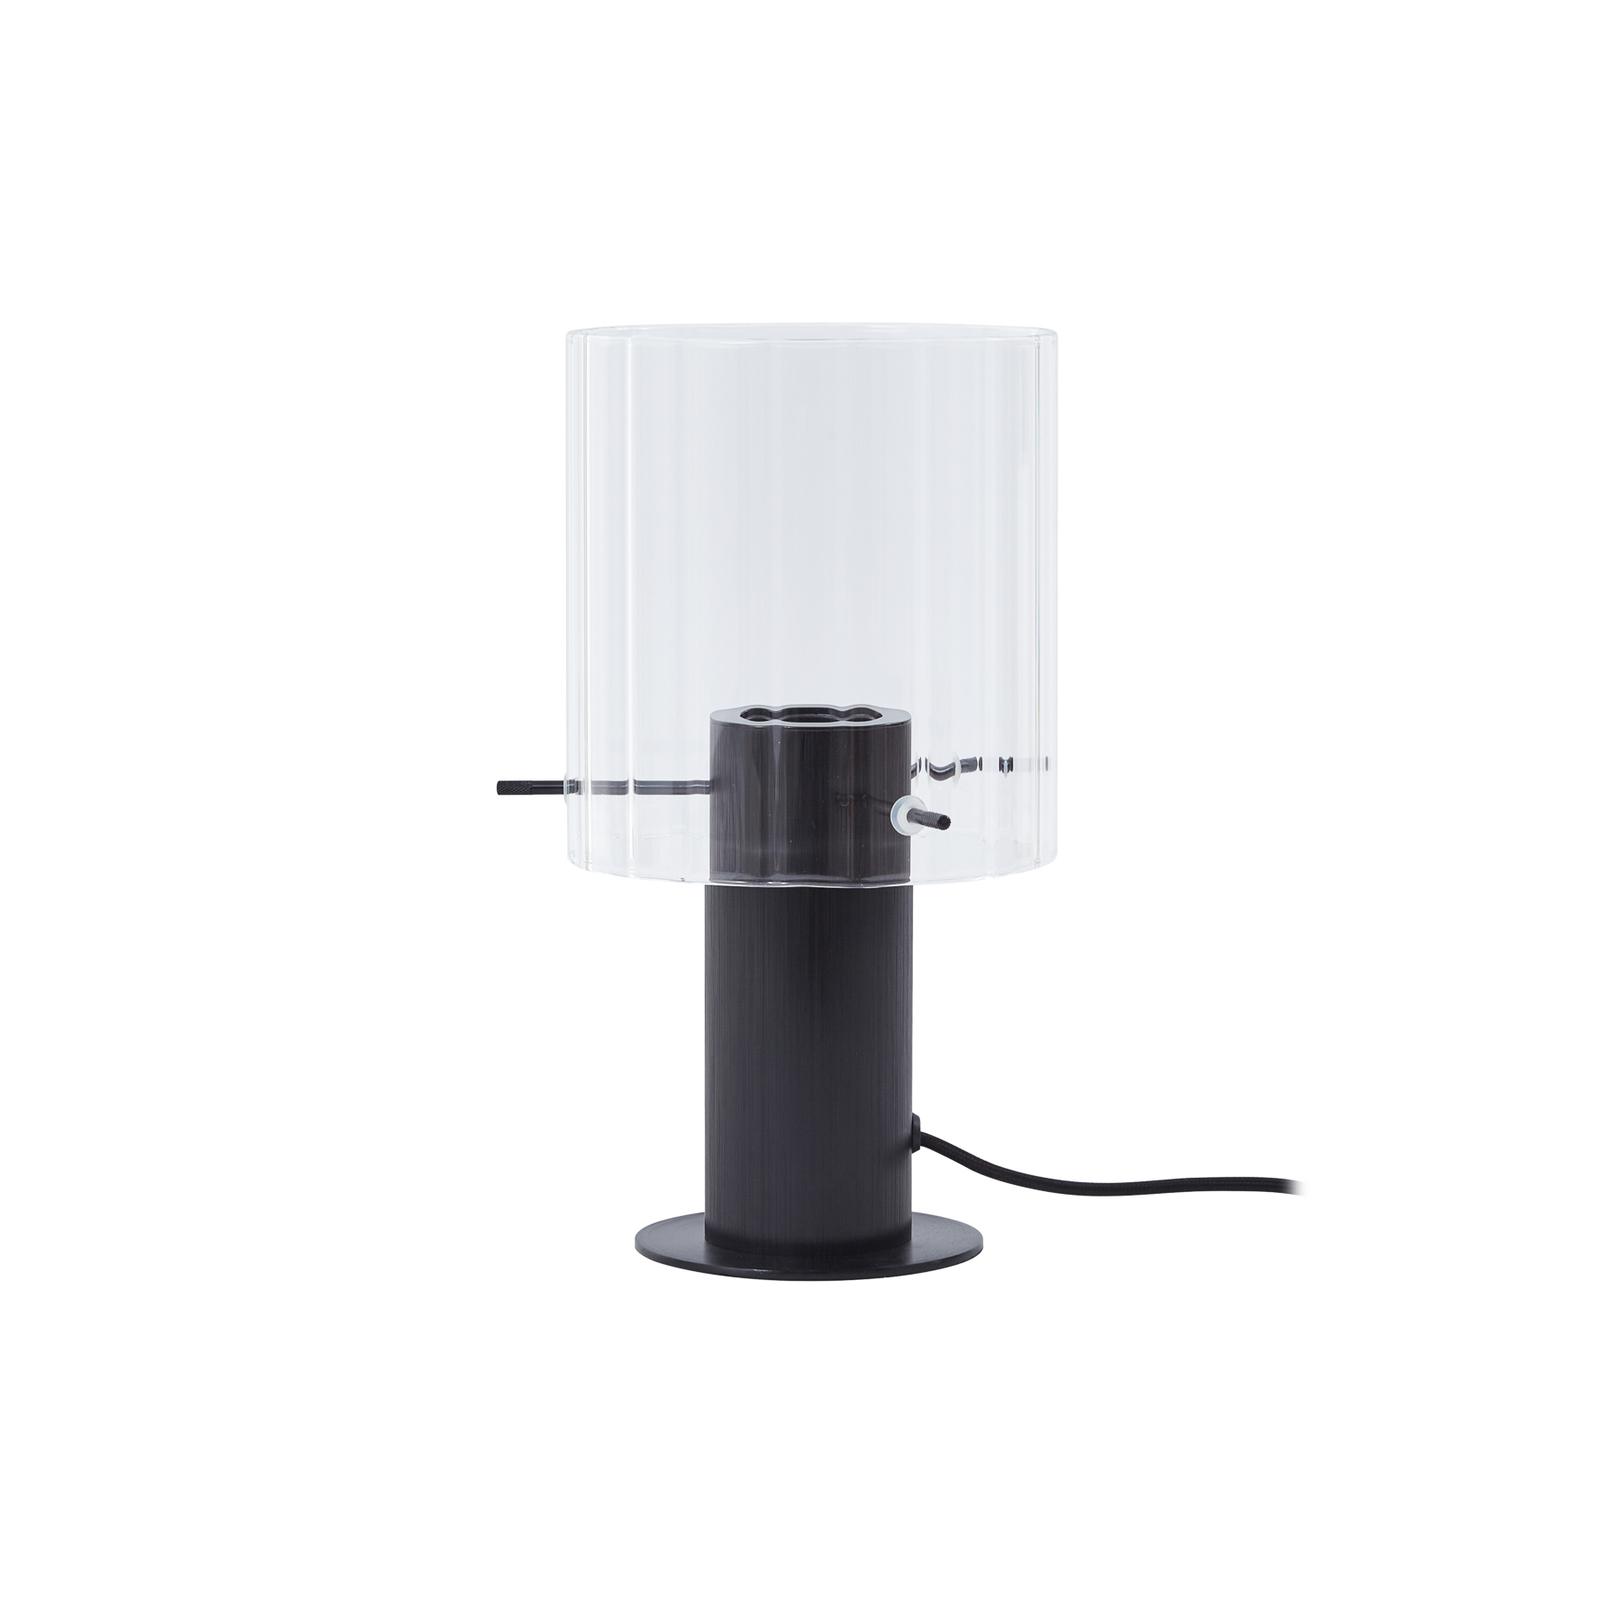 Lucande stolna lampa Eirian, crna, staklo, Ø 14 cm, E27